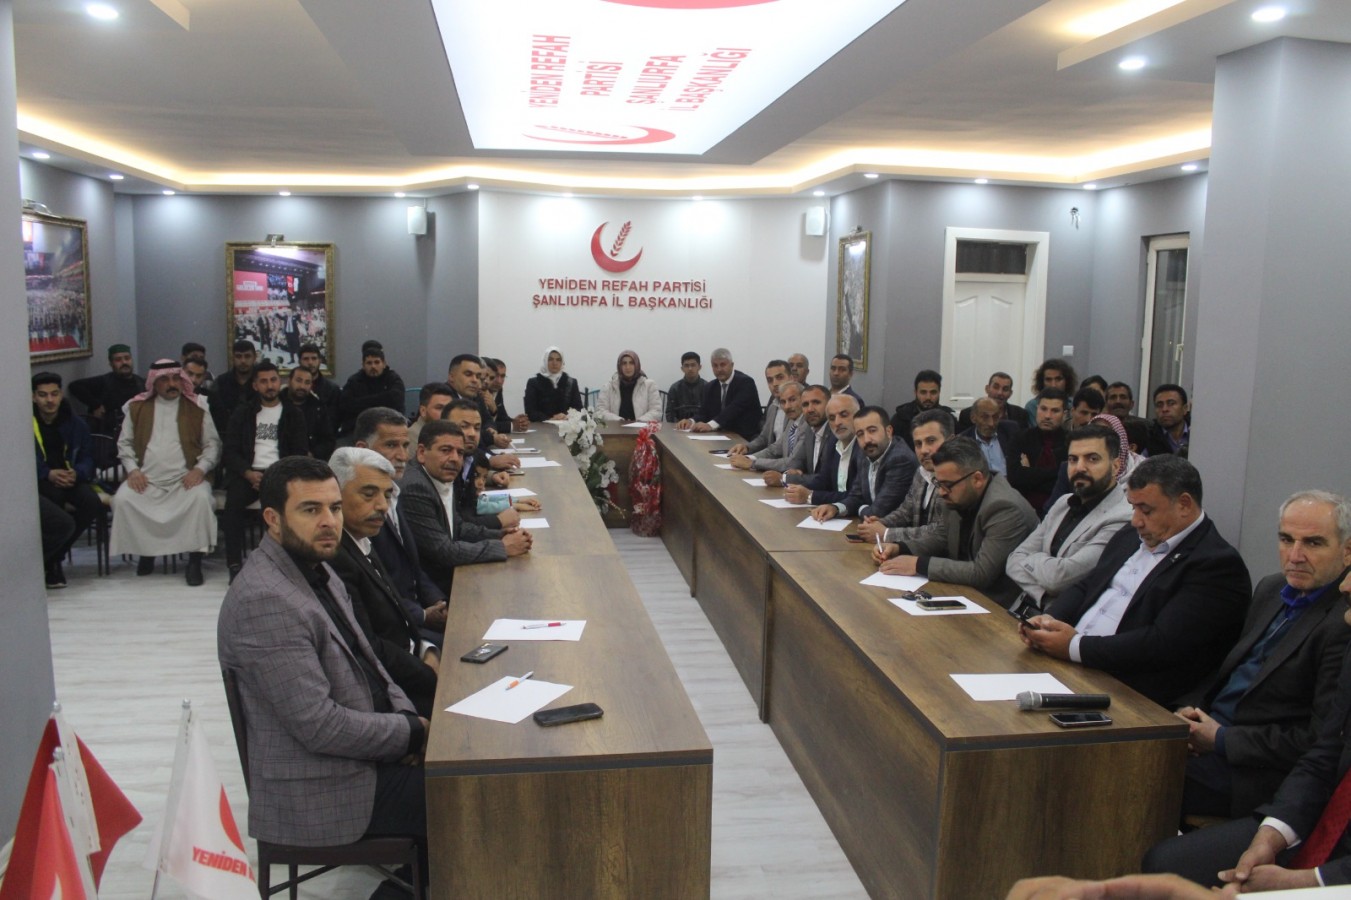 Yeniden Refah Partisi’nin Urfa milletvekili aday adayları belli oldu